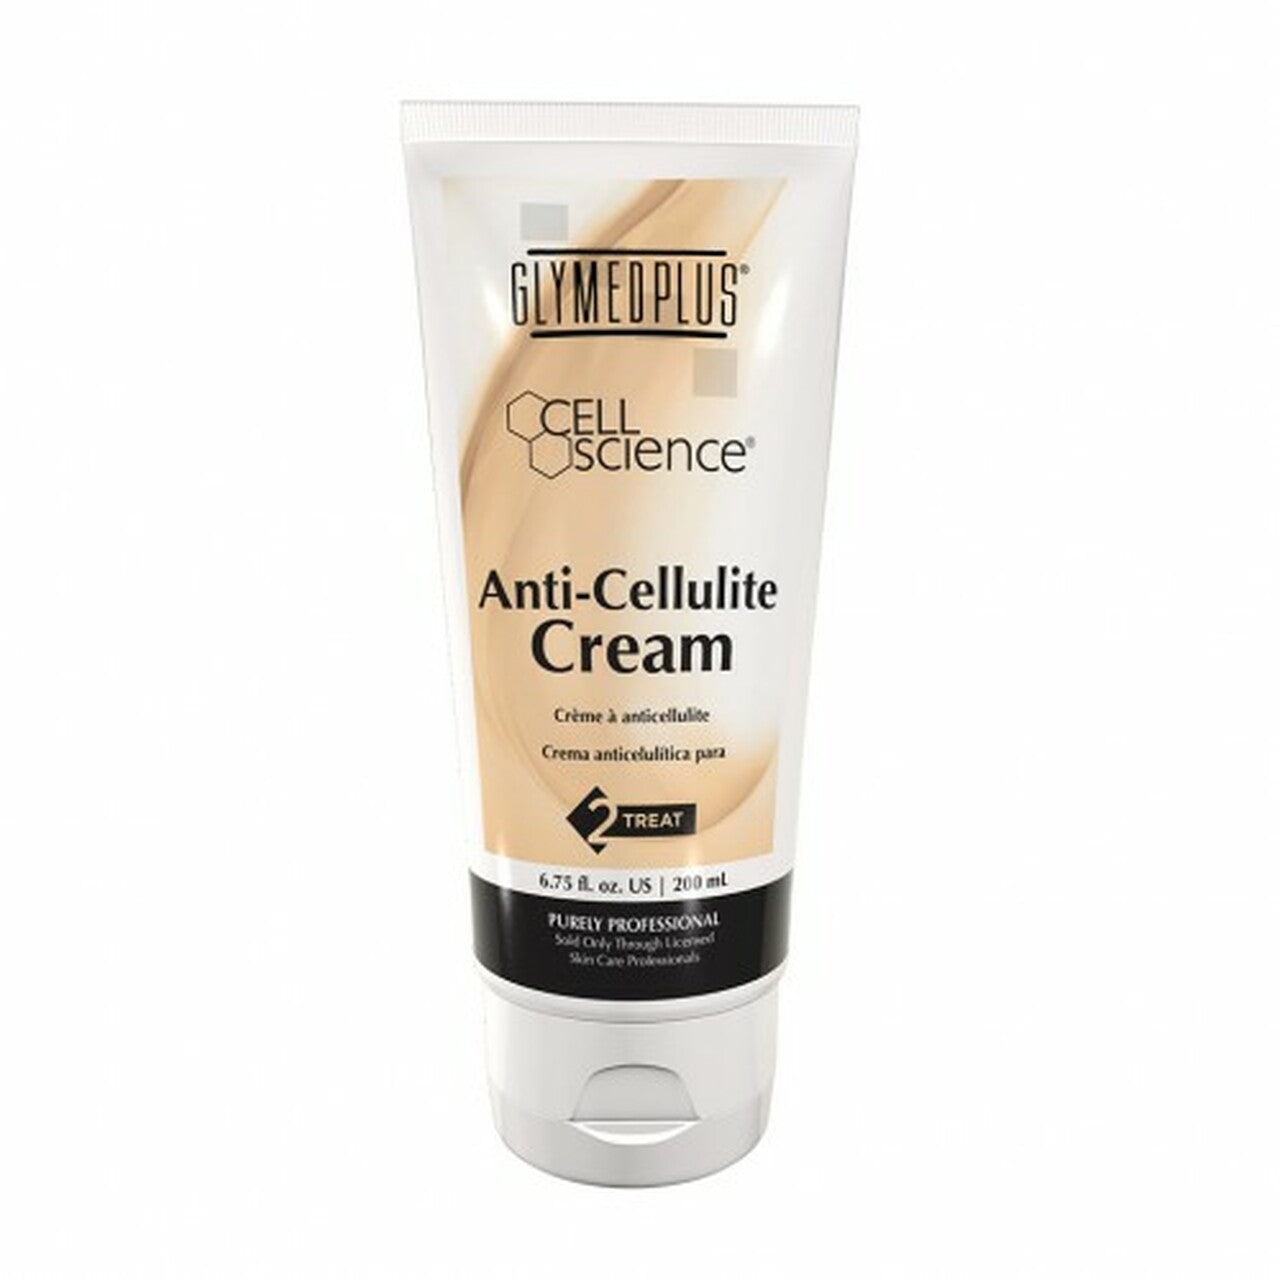 Anti-Cellulite Cream/Cellulite Corrector Cream